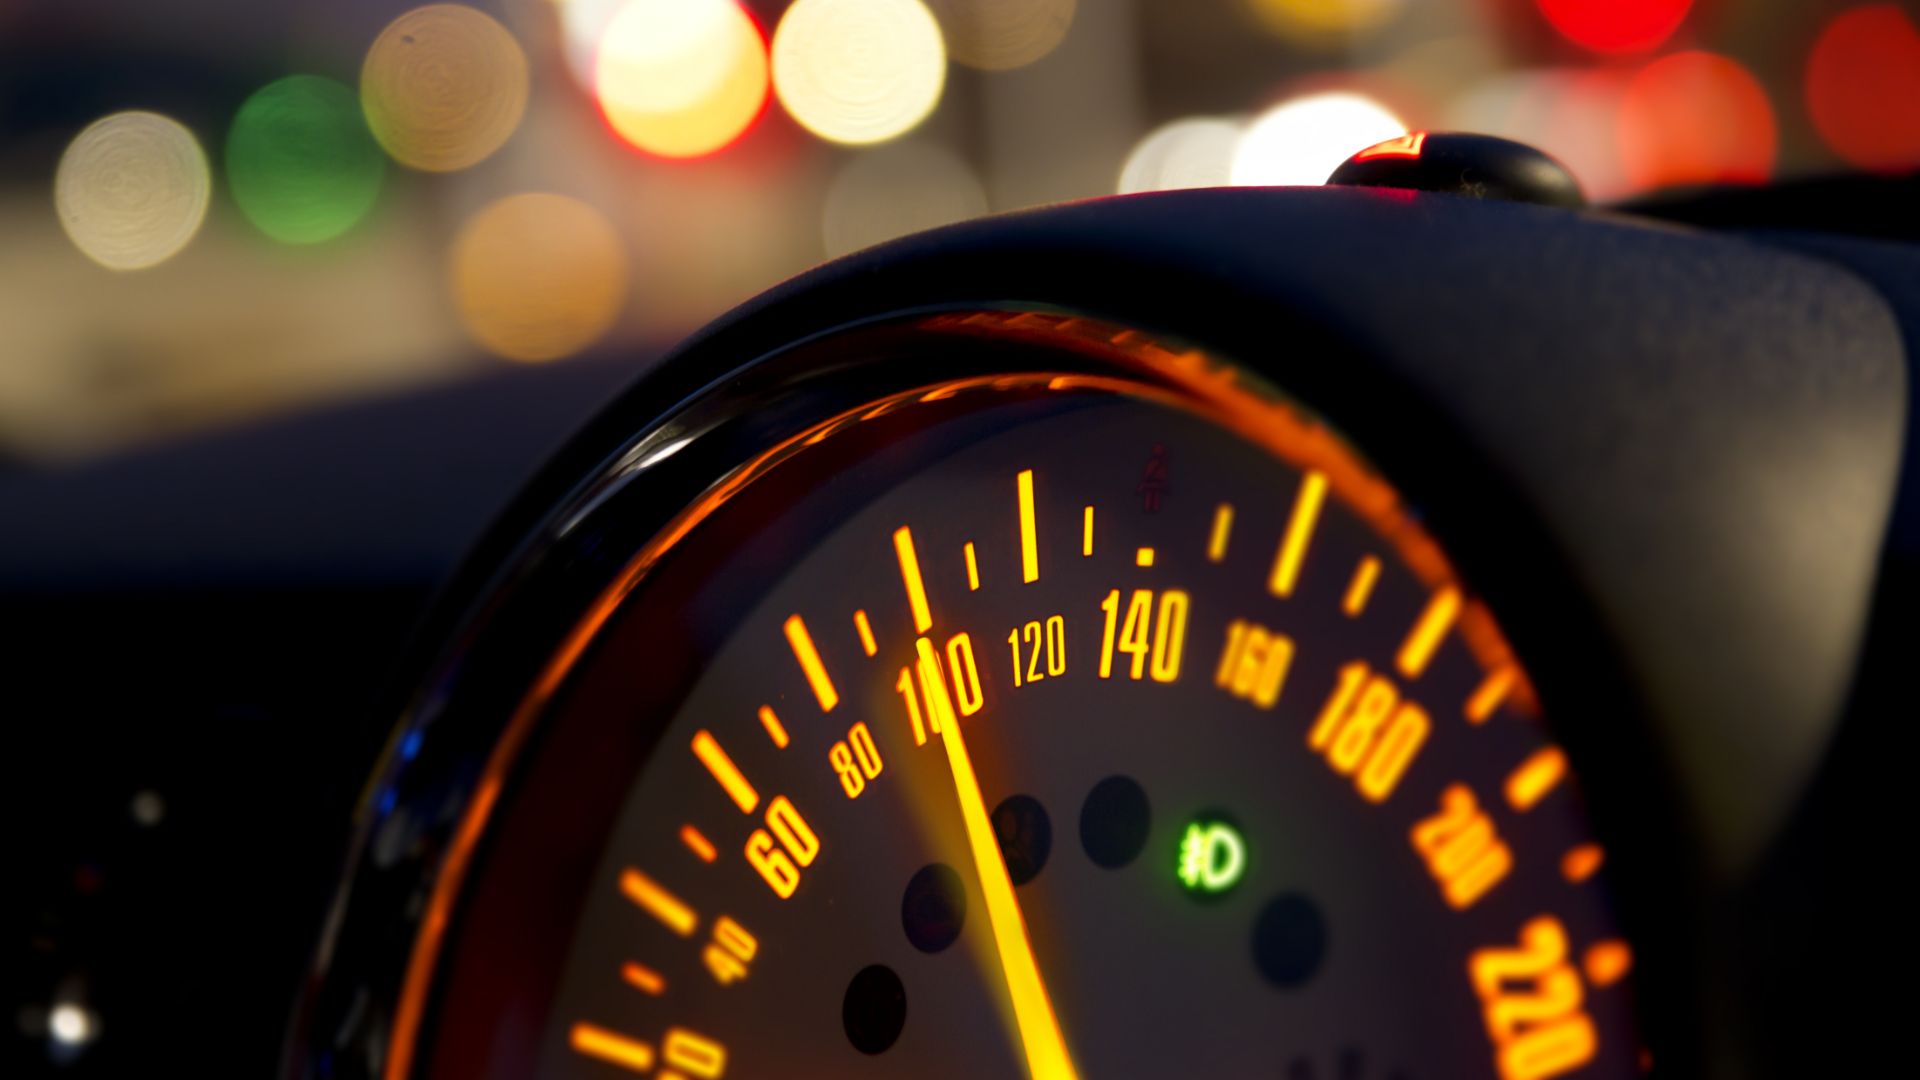 UK drivers' speeding habits revealed